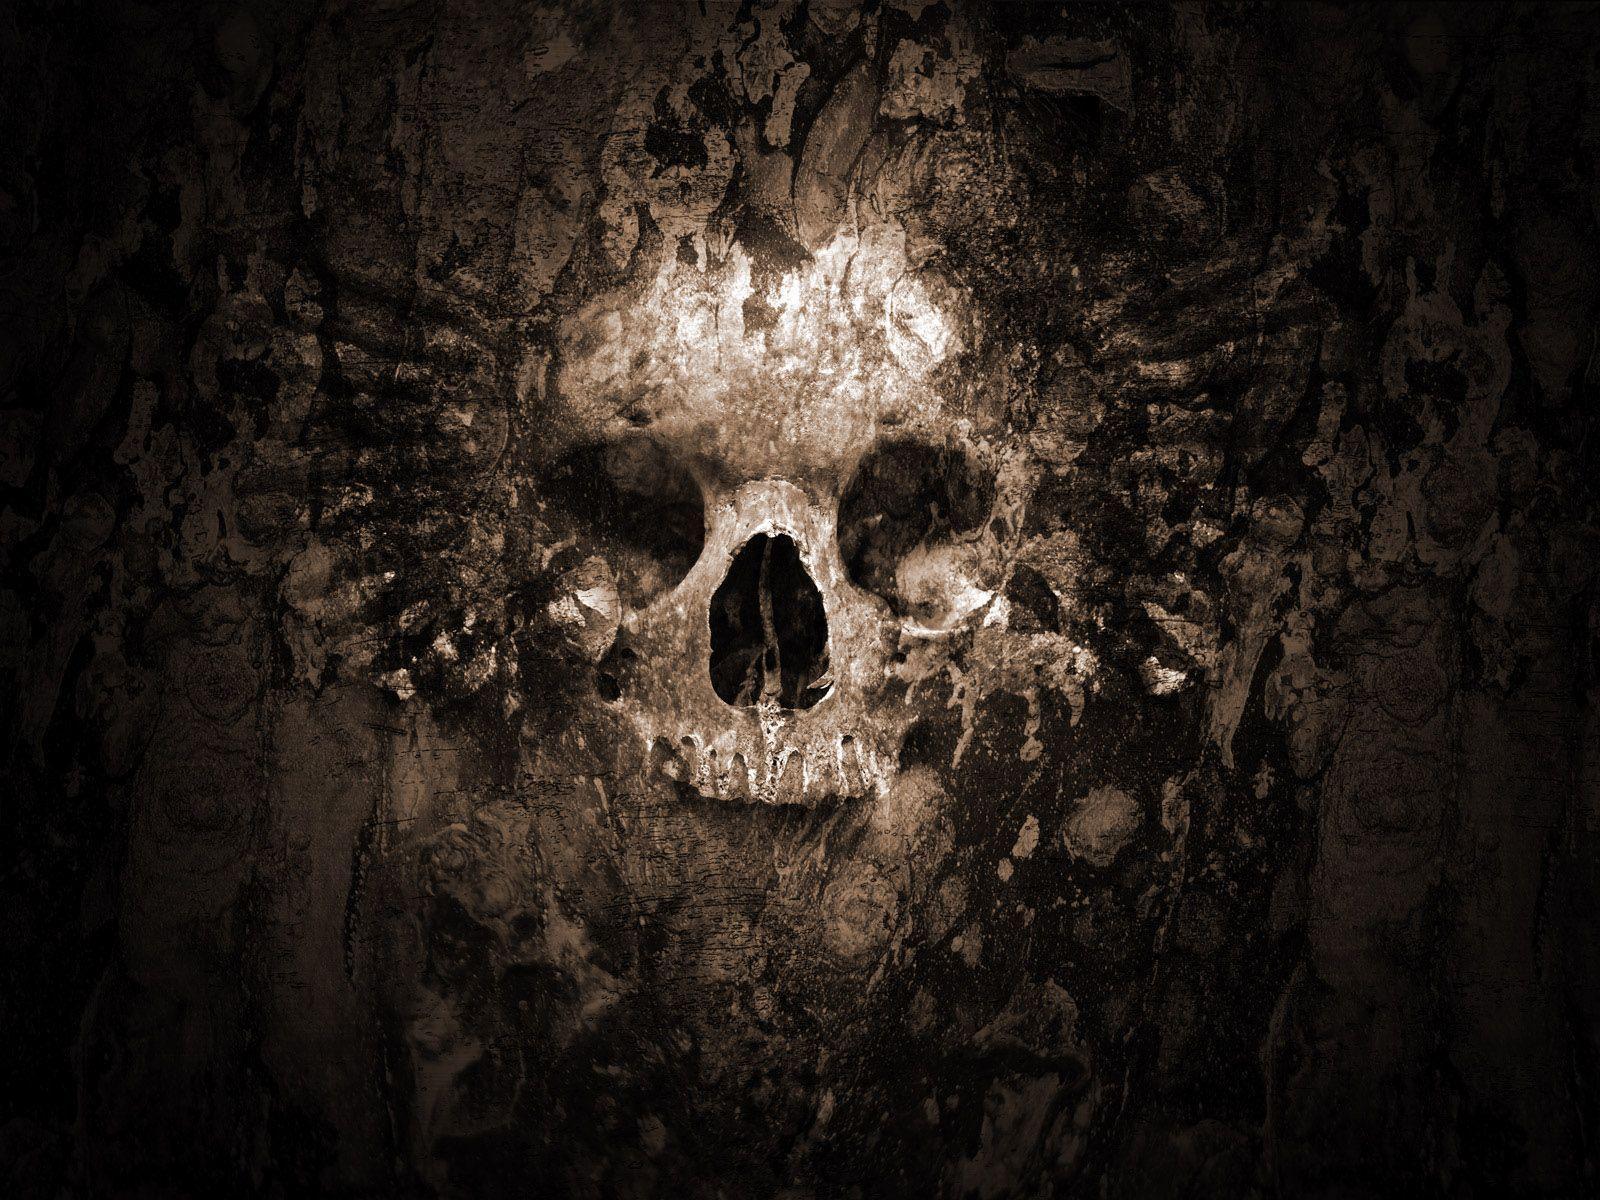 Skull Desktop Wallpaper